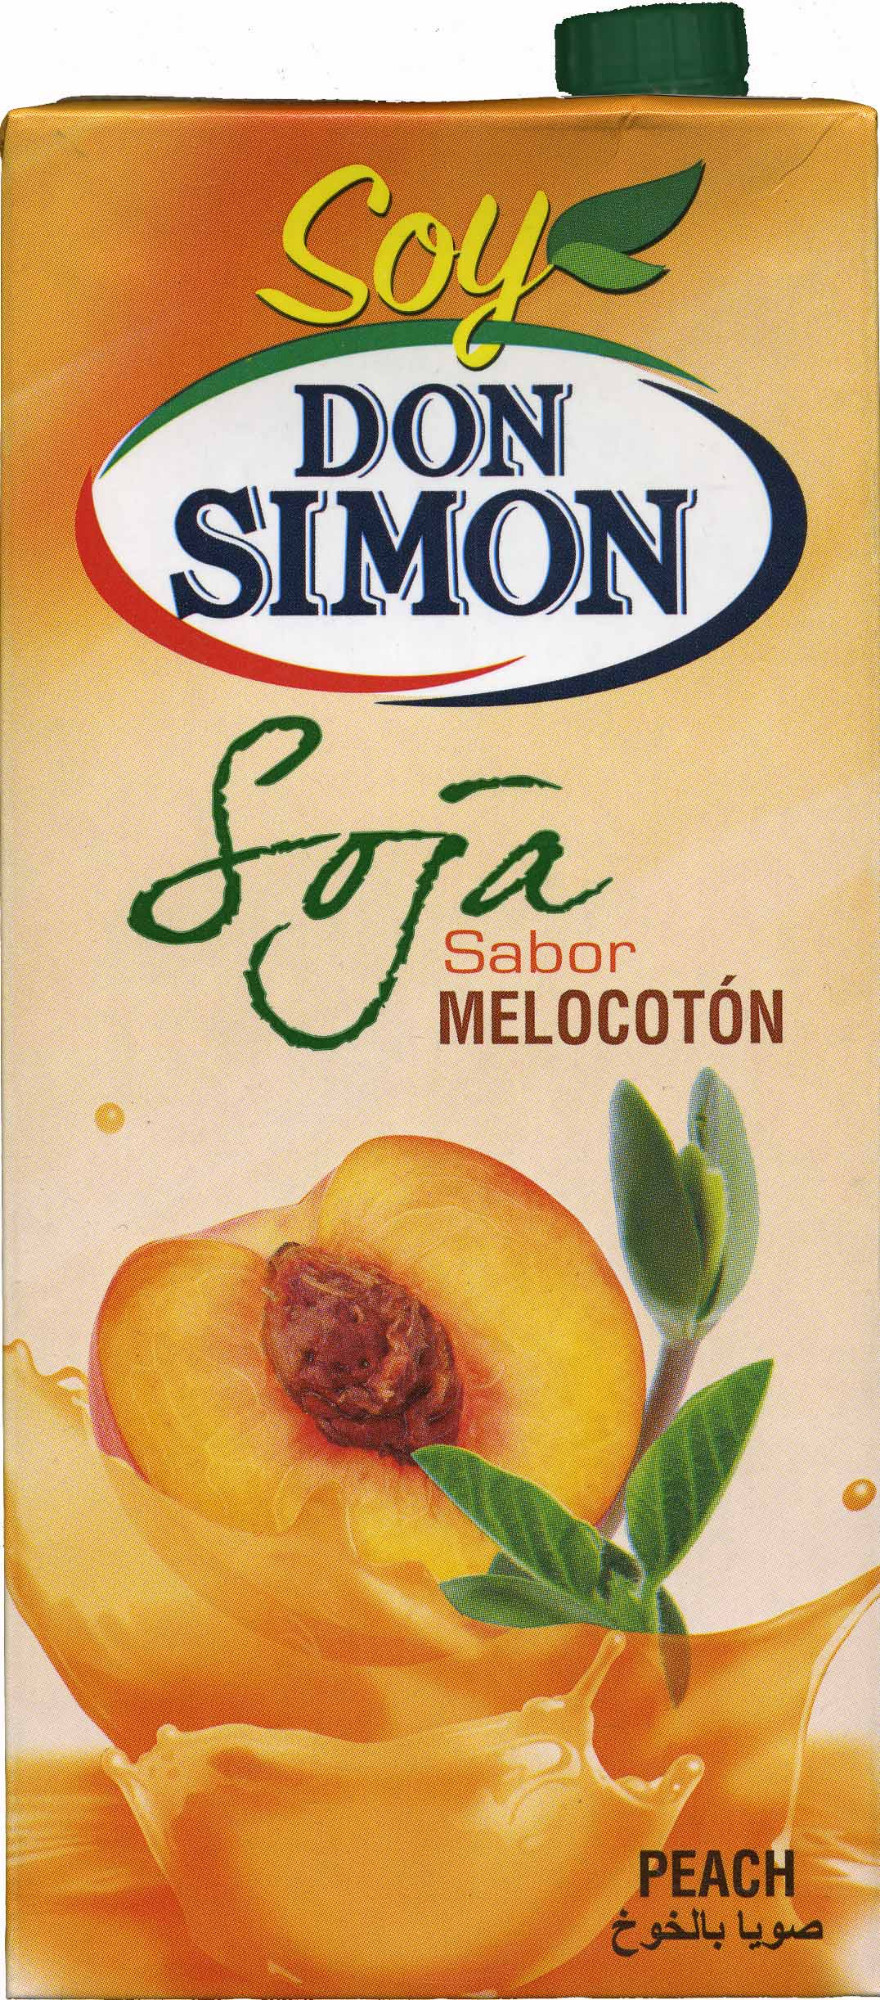 Soja sabor melocoton - Producte - es